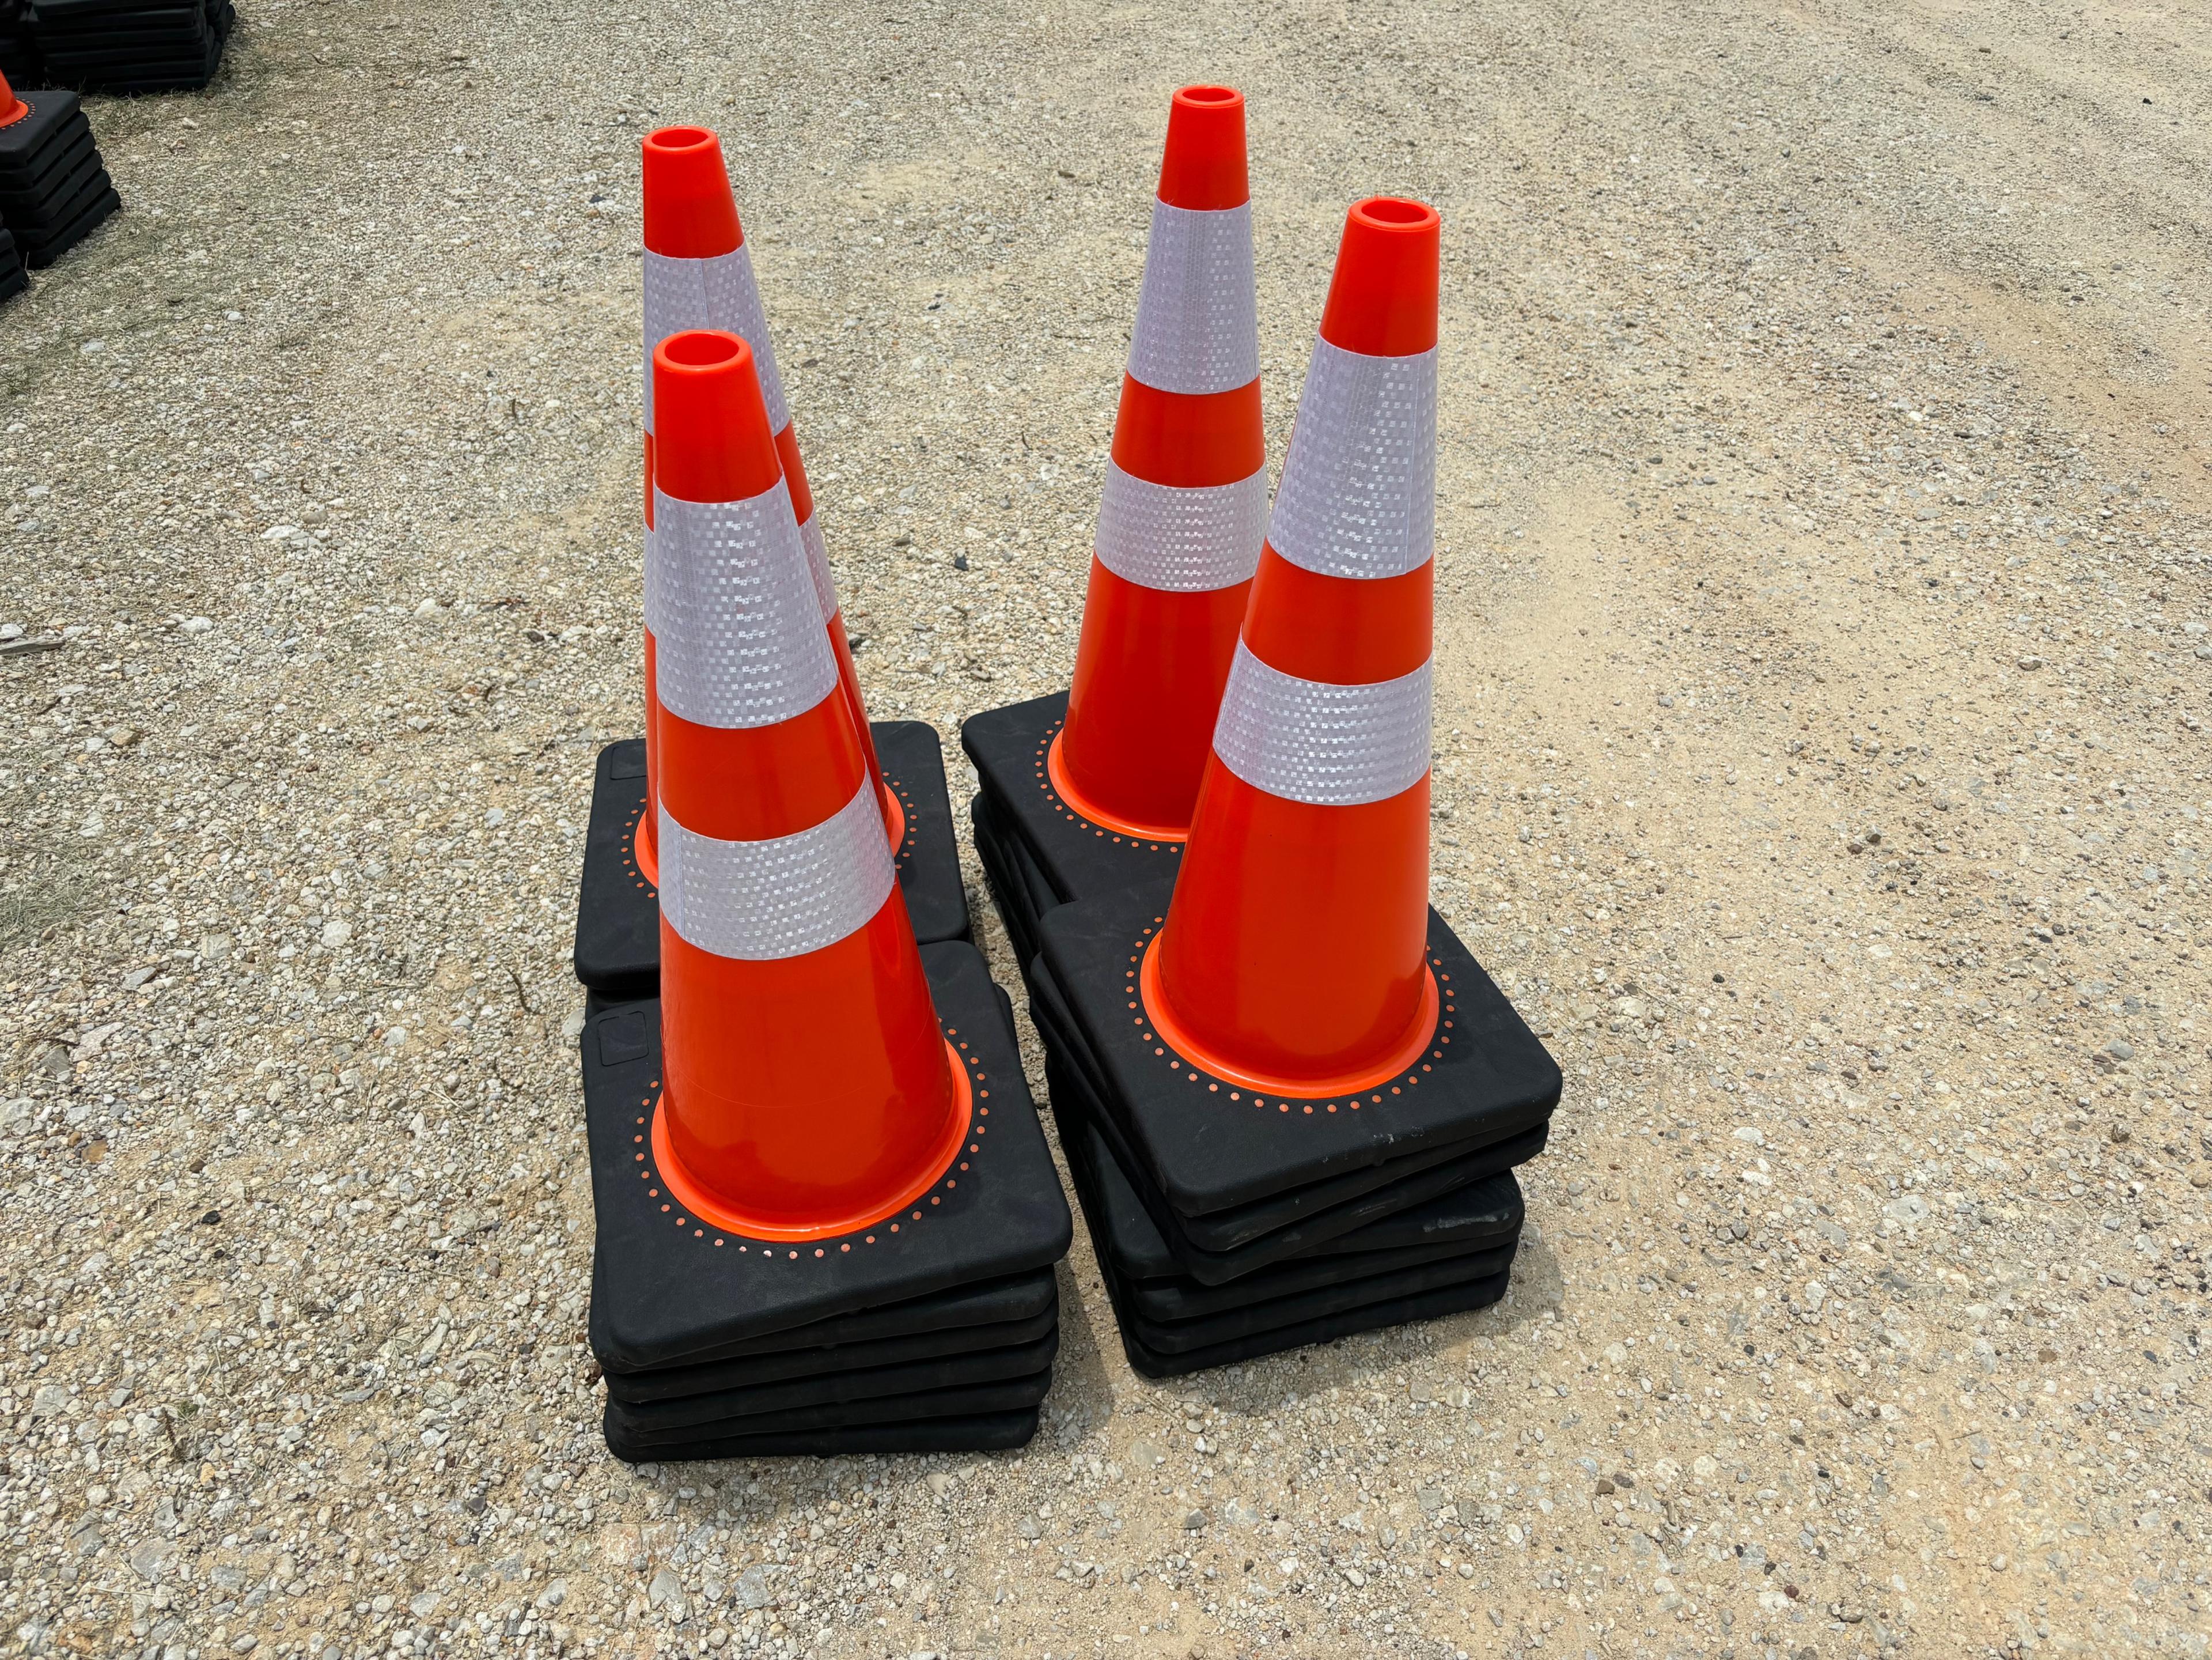 25 Safety Cones